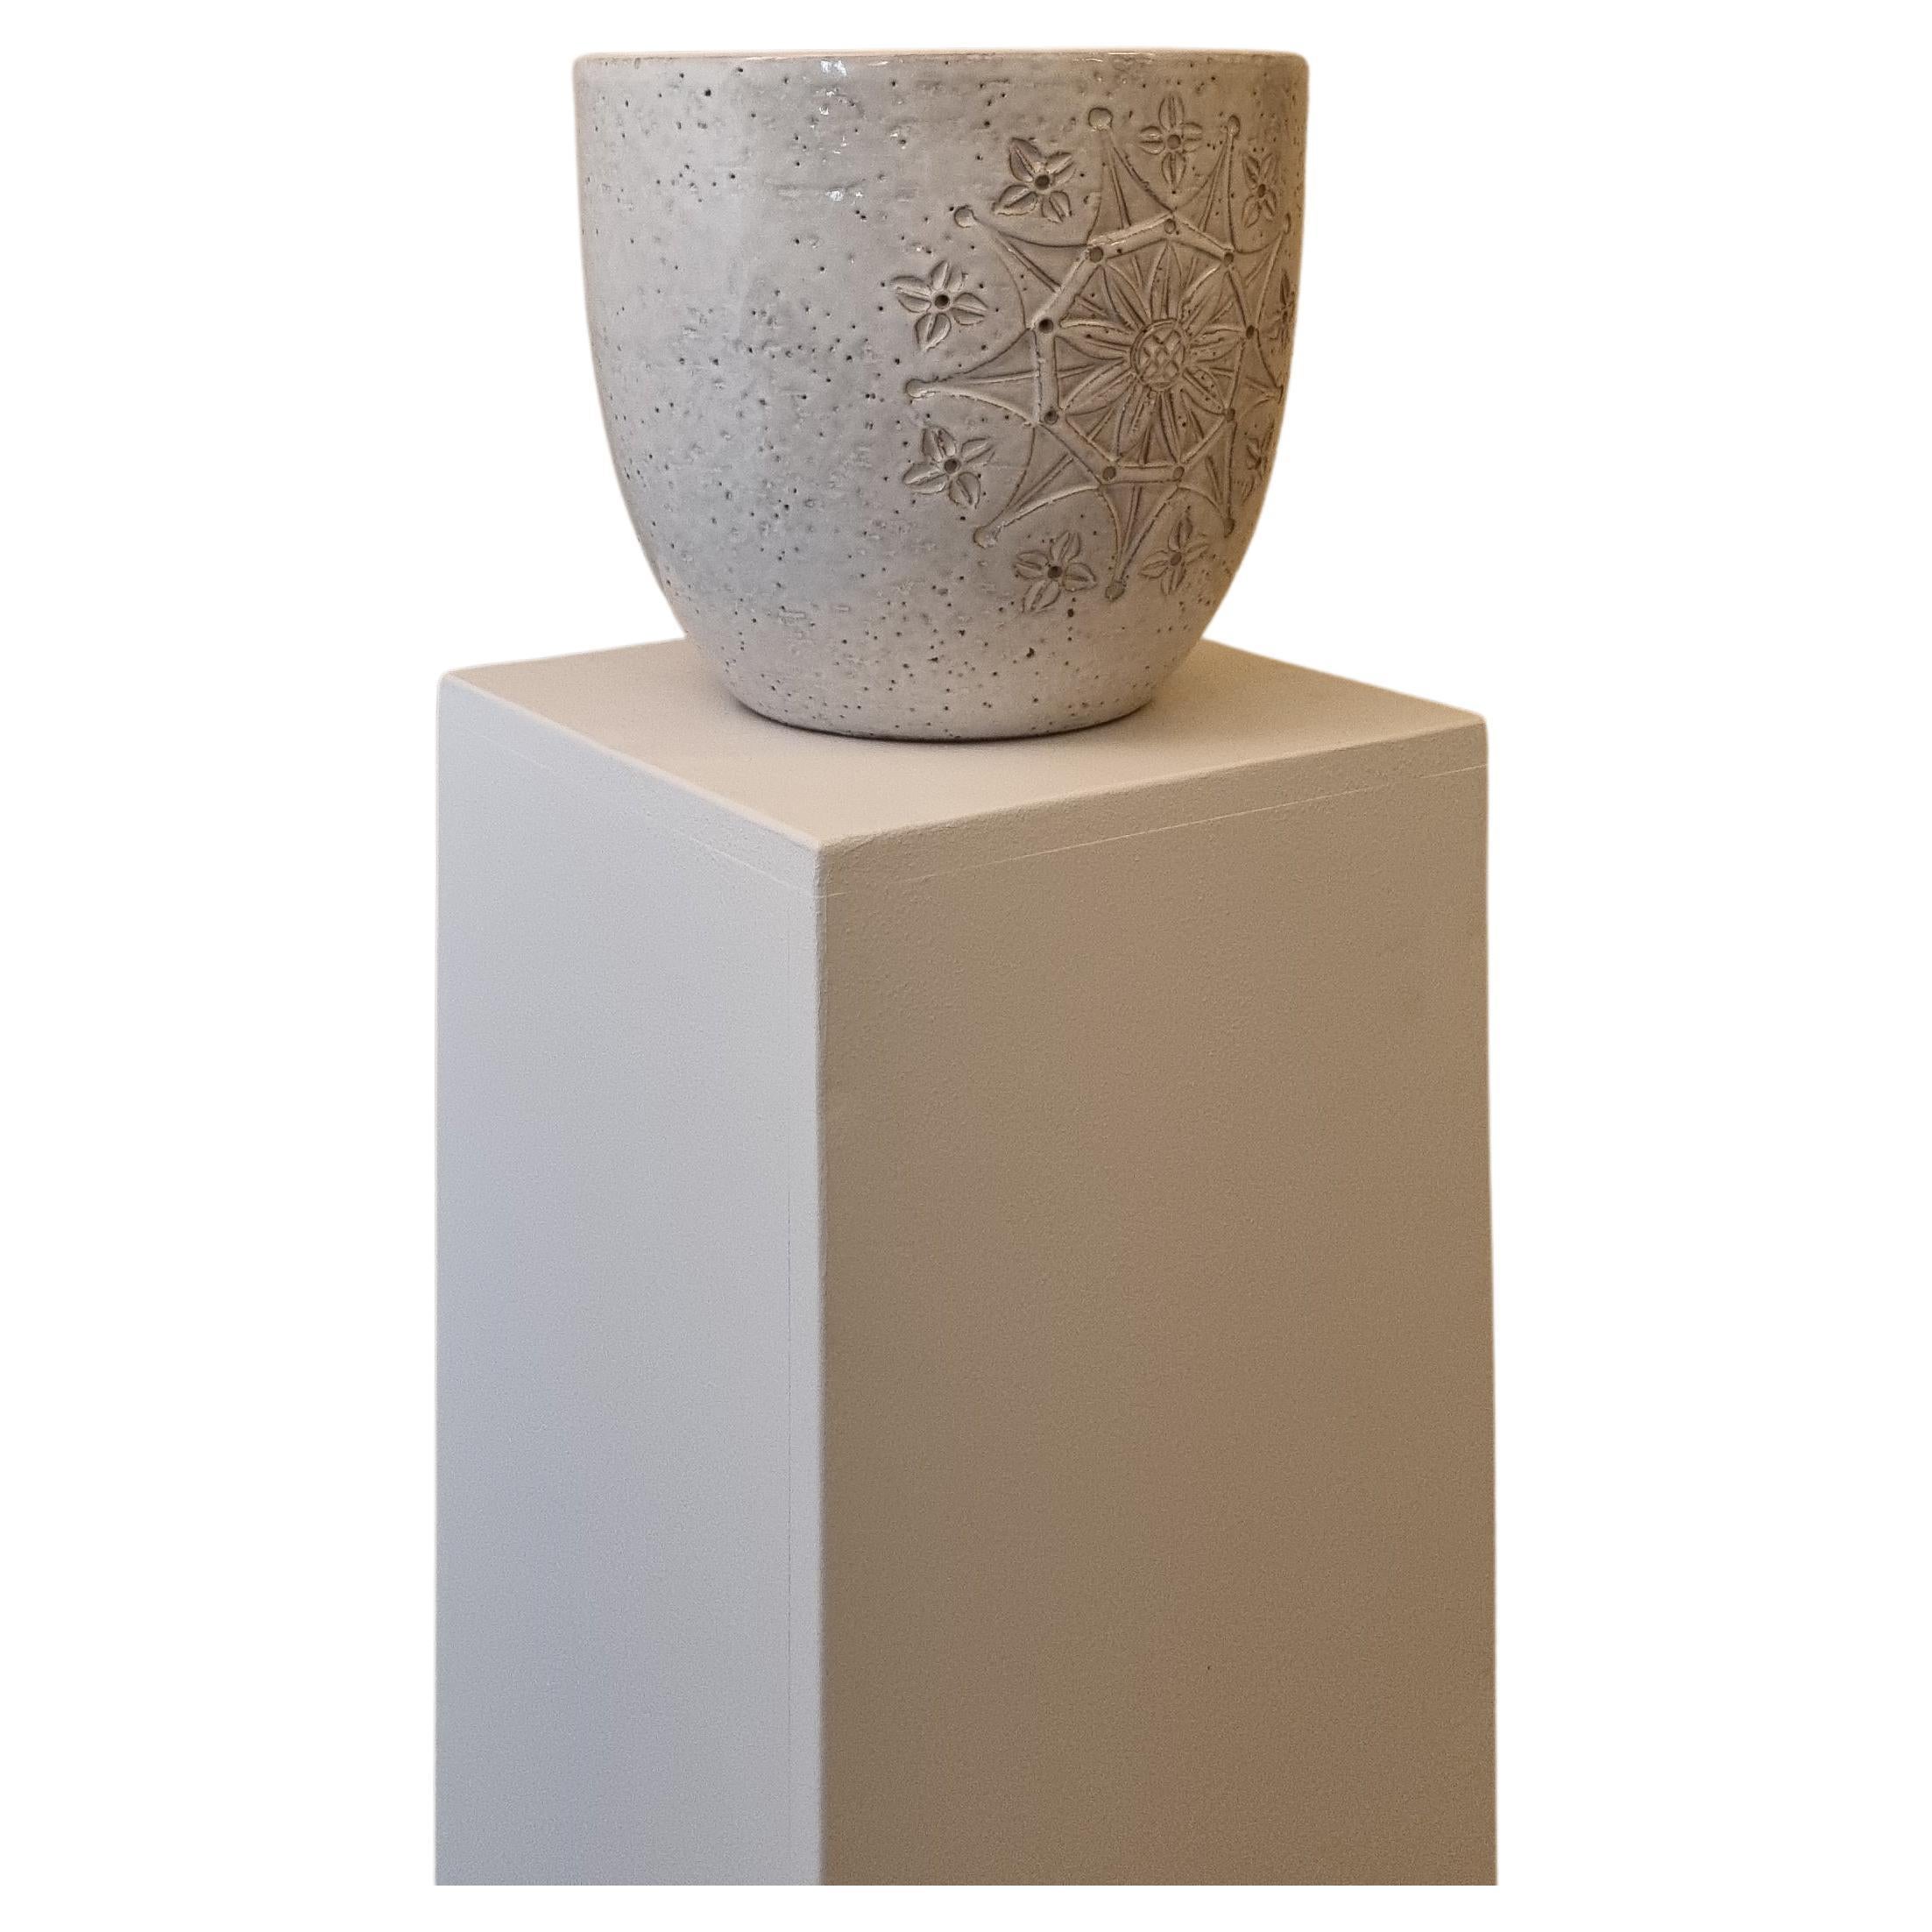 Siviglia Ceramic planter by Aldo Londi for Ceramiche Bitossi Montelupo, 60s.  For Sale